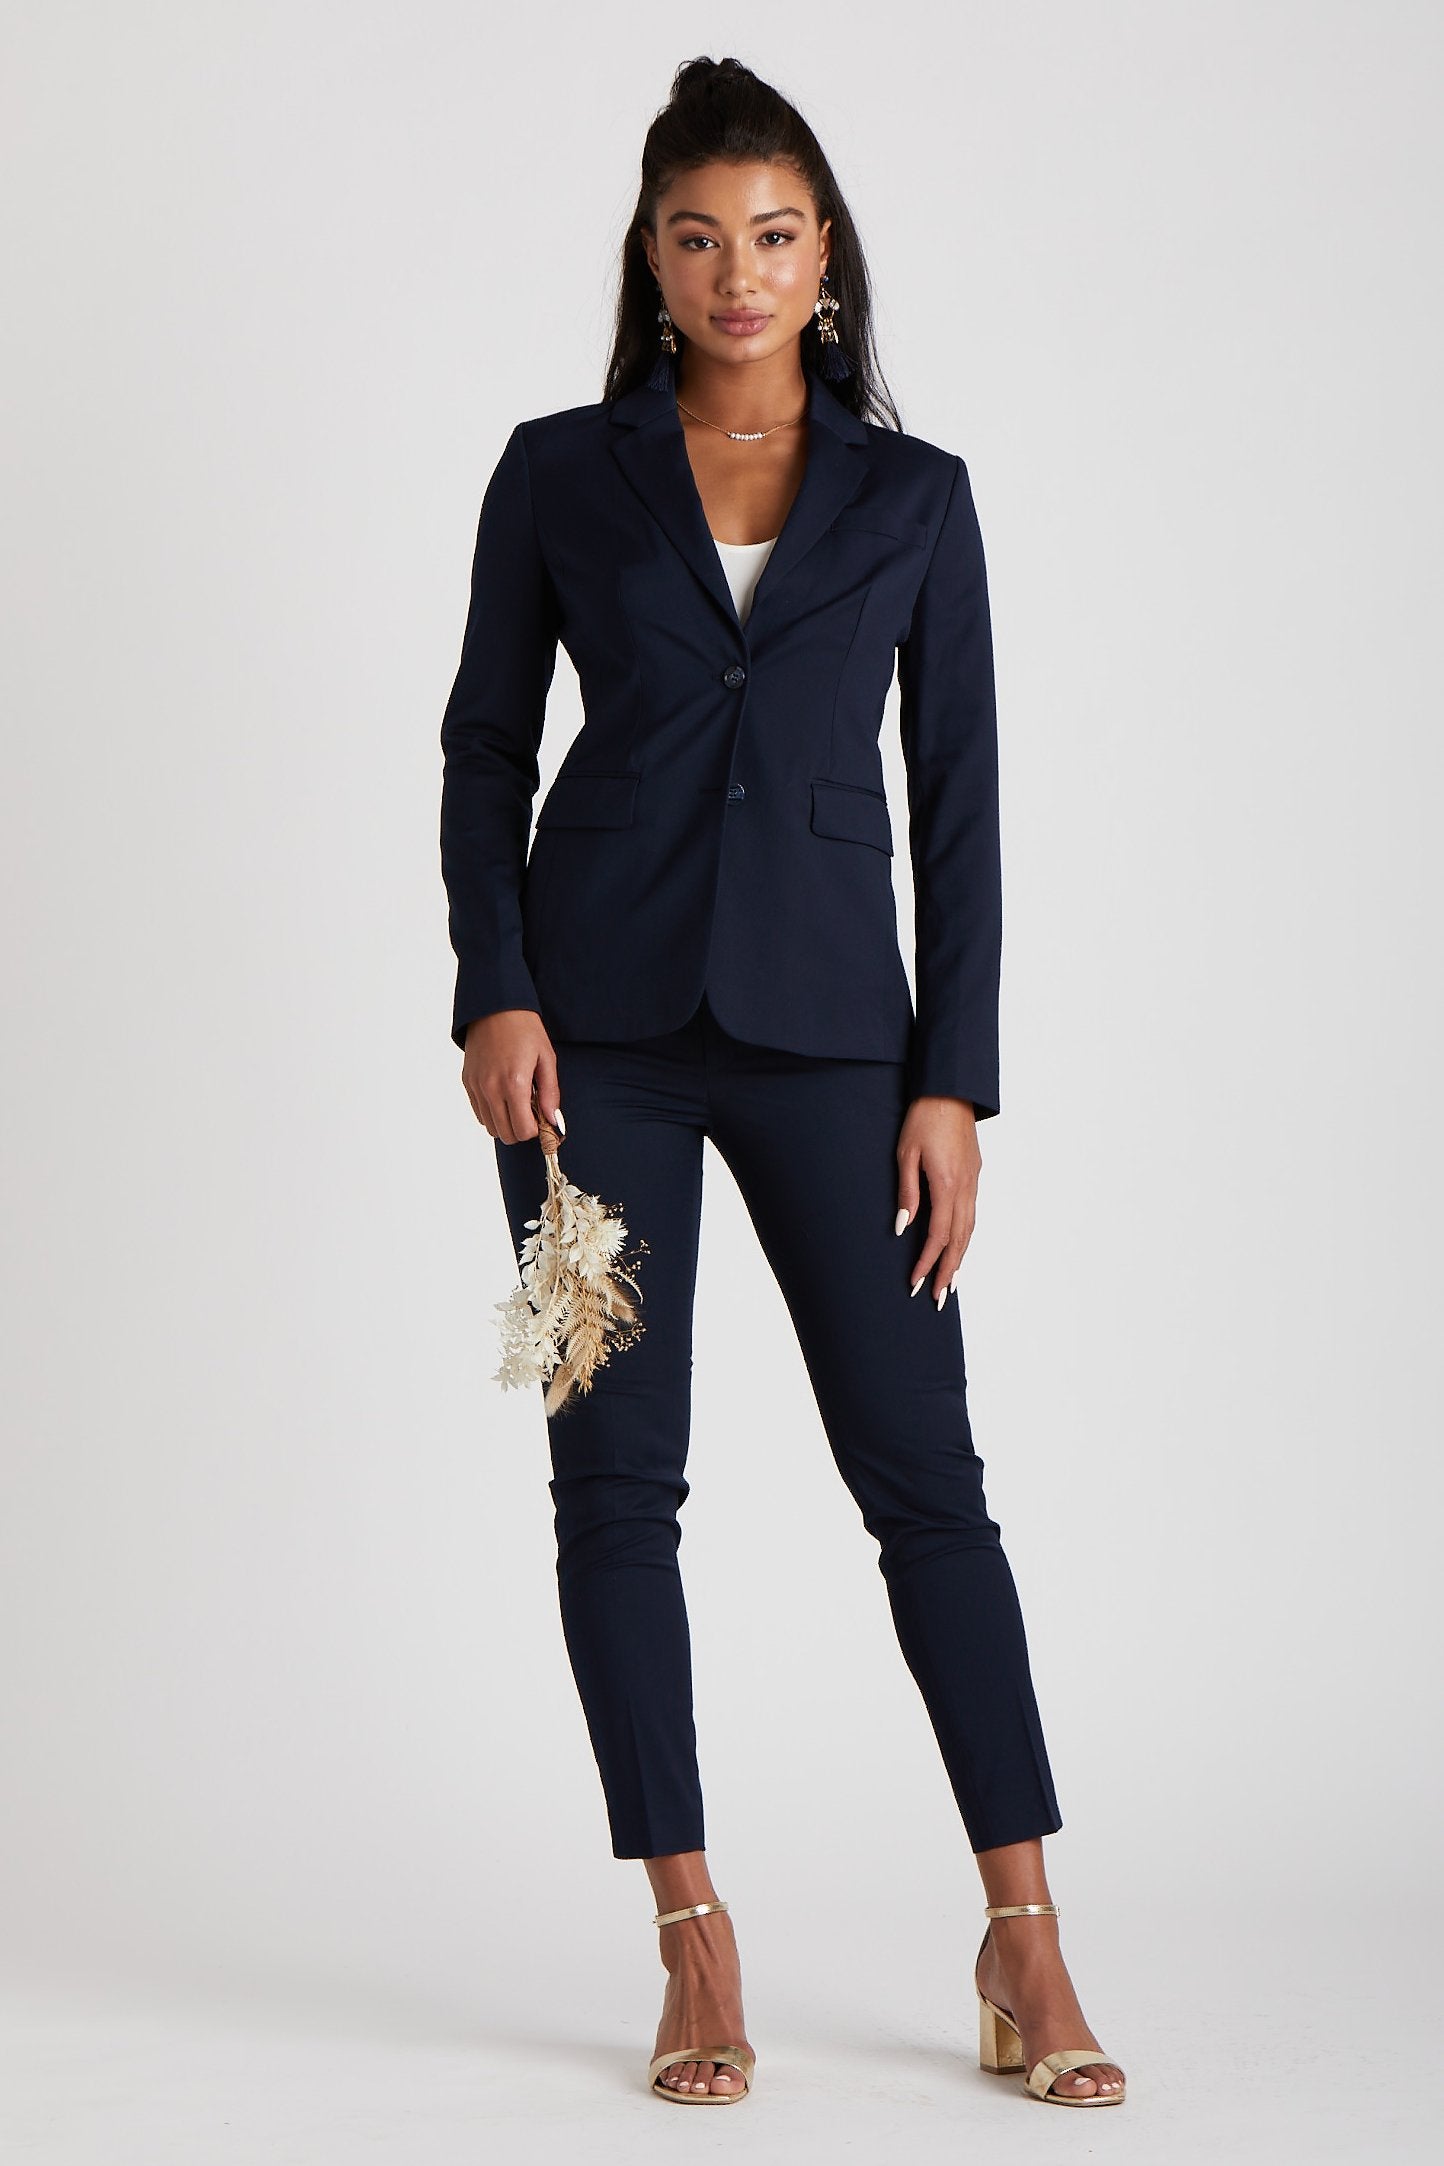 Women's Navy Blue Suit by SuitShop